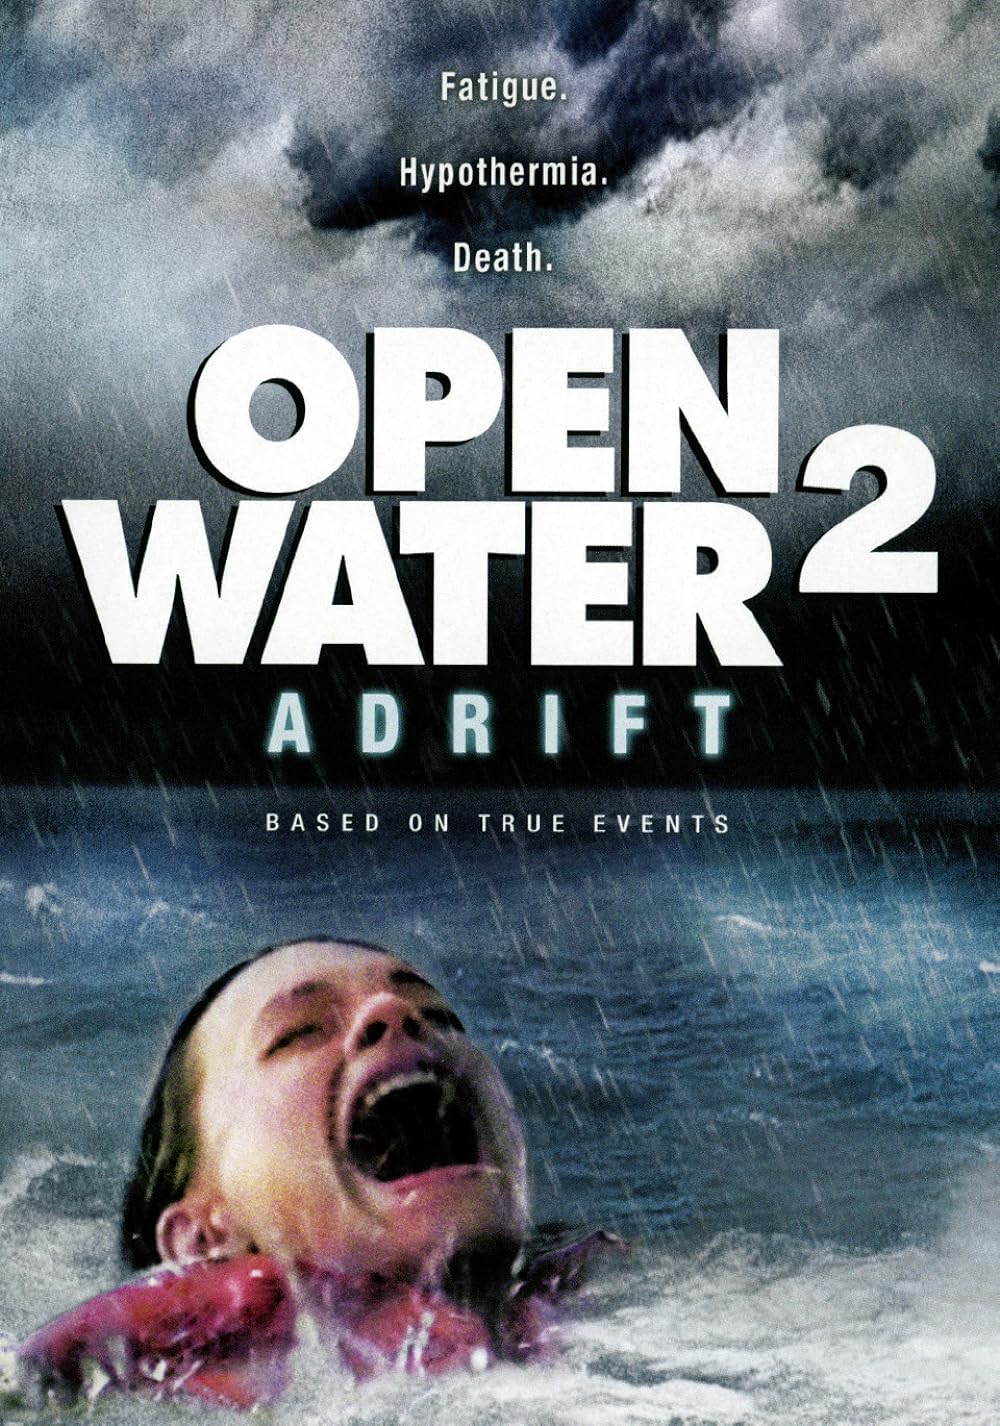 Open Water 2: Adrift (2006) 192Kbps 23.976Fps 48Khz 2.0Ch DigitalTV Turkish Audio TAC